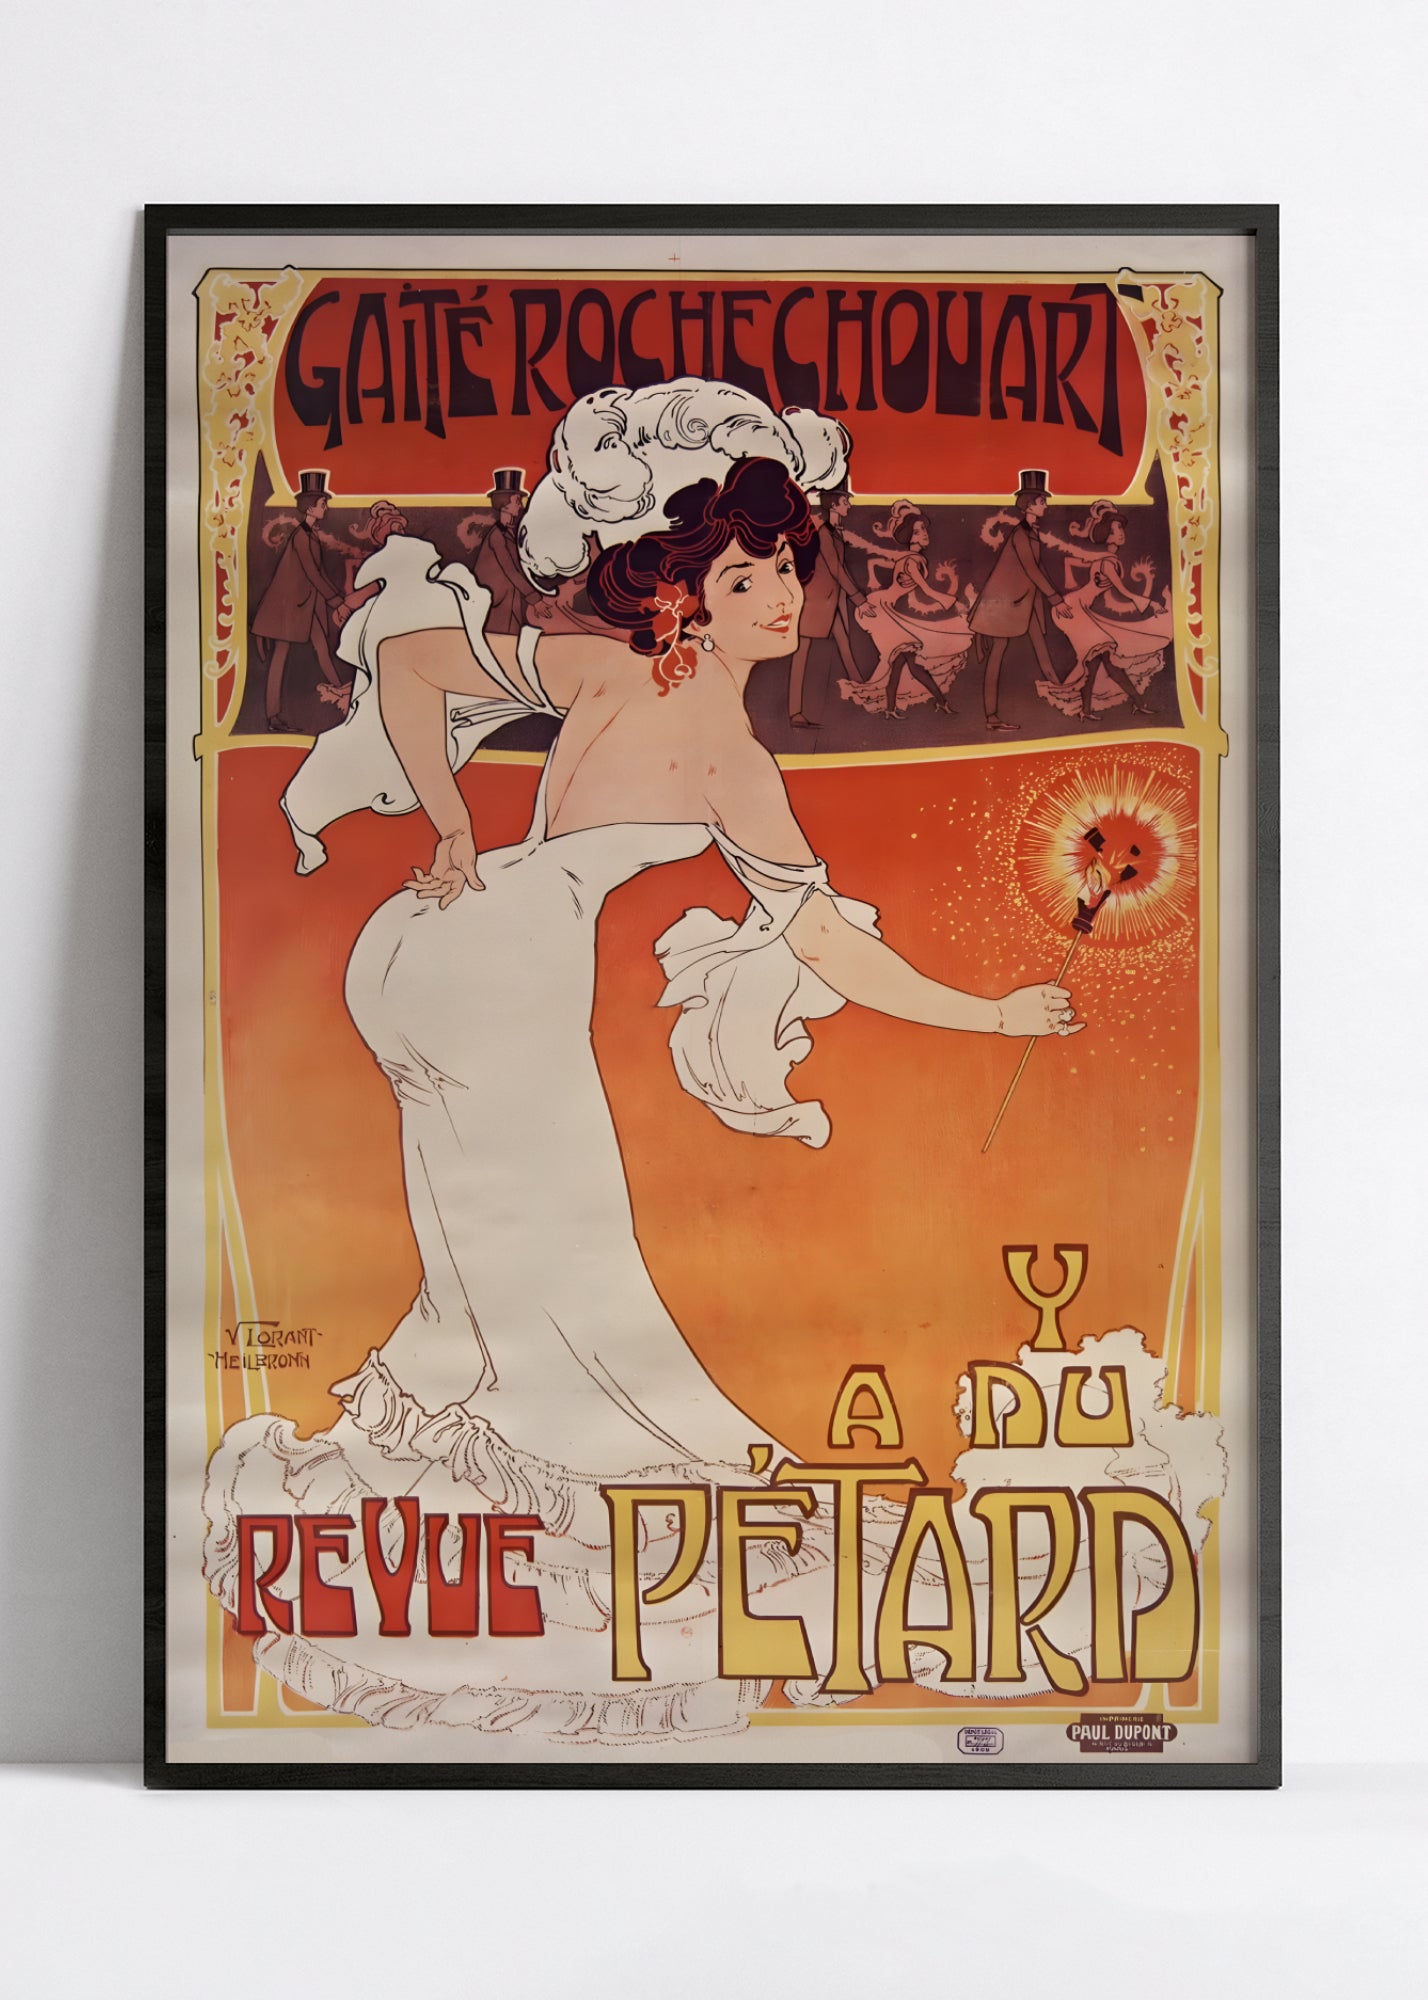 Affiche cabaret vintage "Gaïté Rochechouard - 'Ya du pétard" - Haute Définition - papier mat 230gr/m²